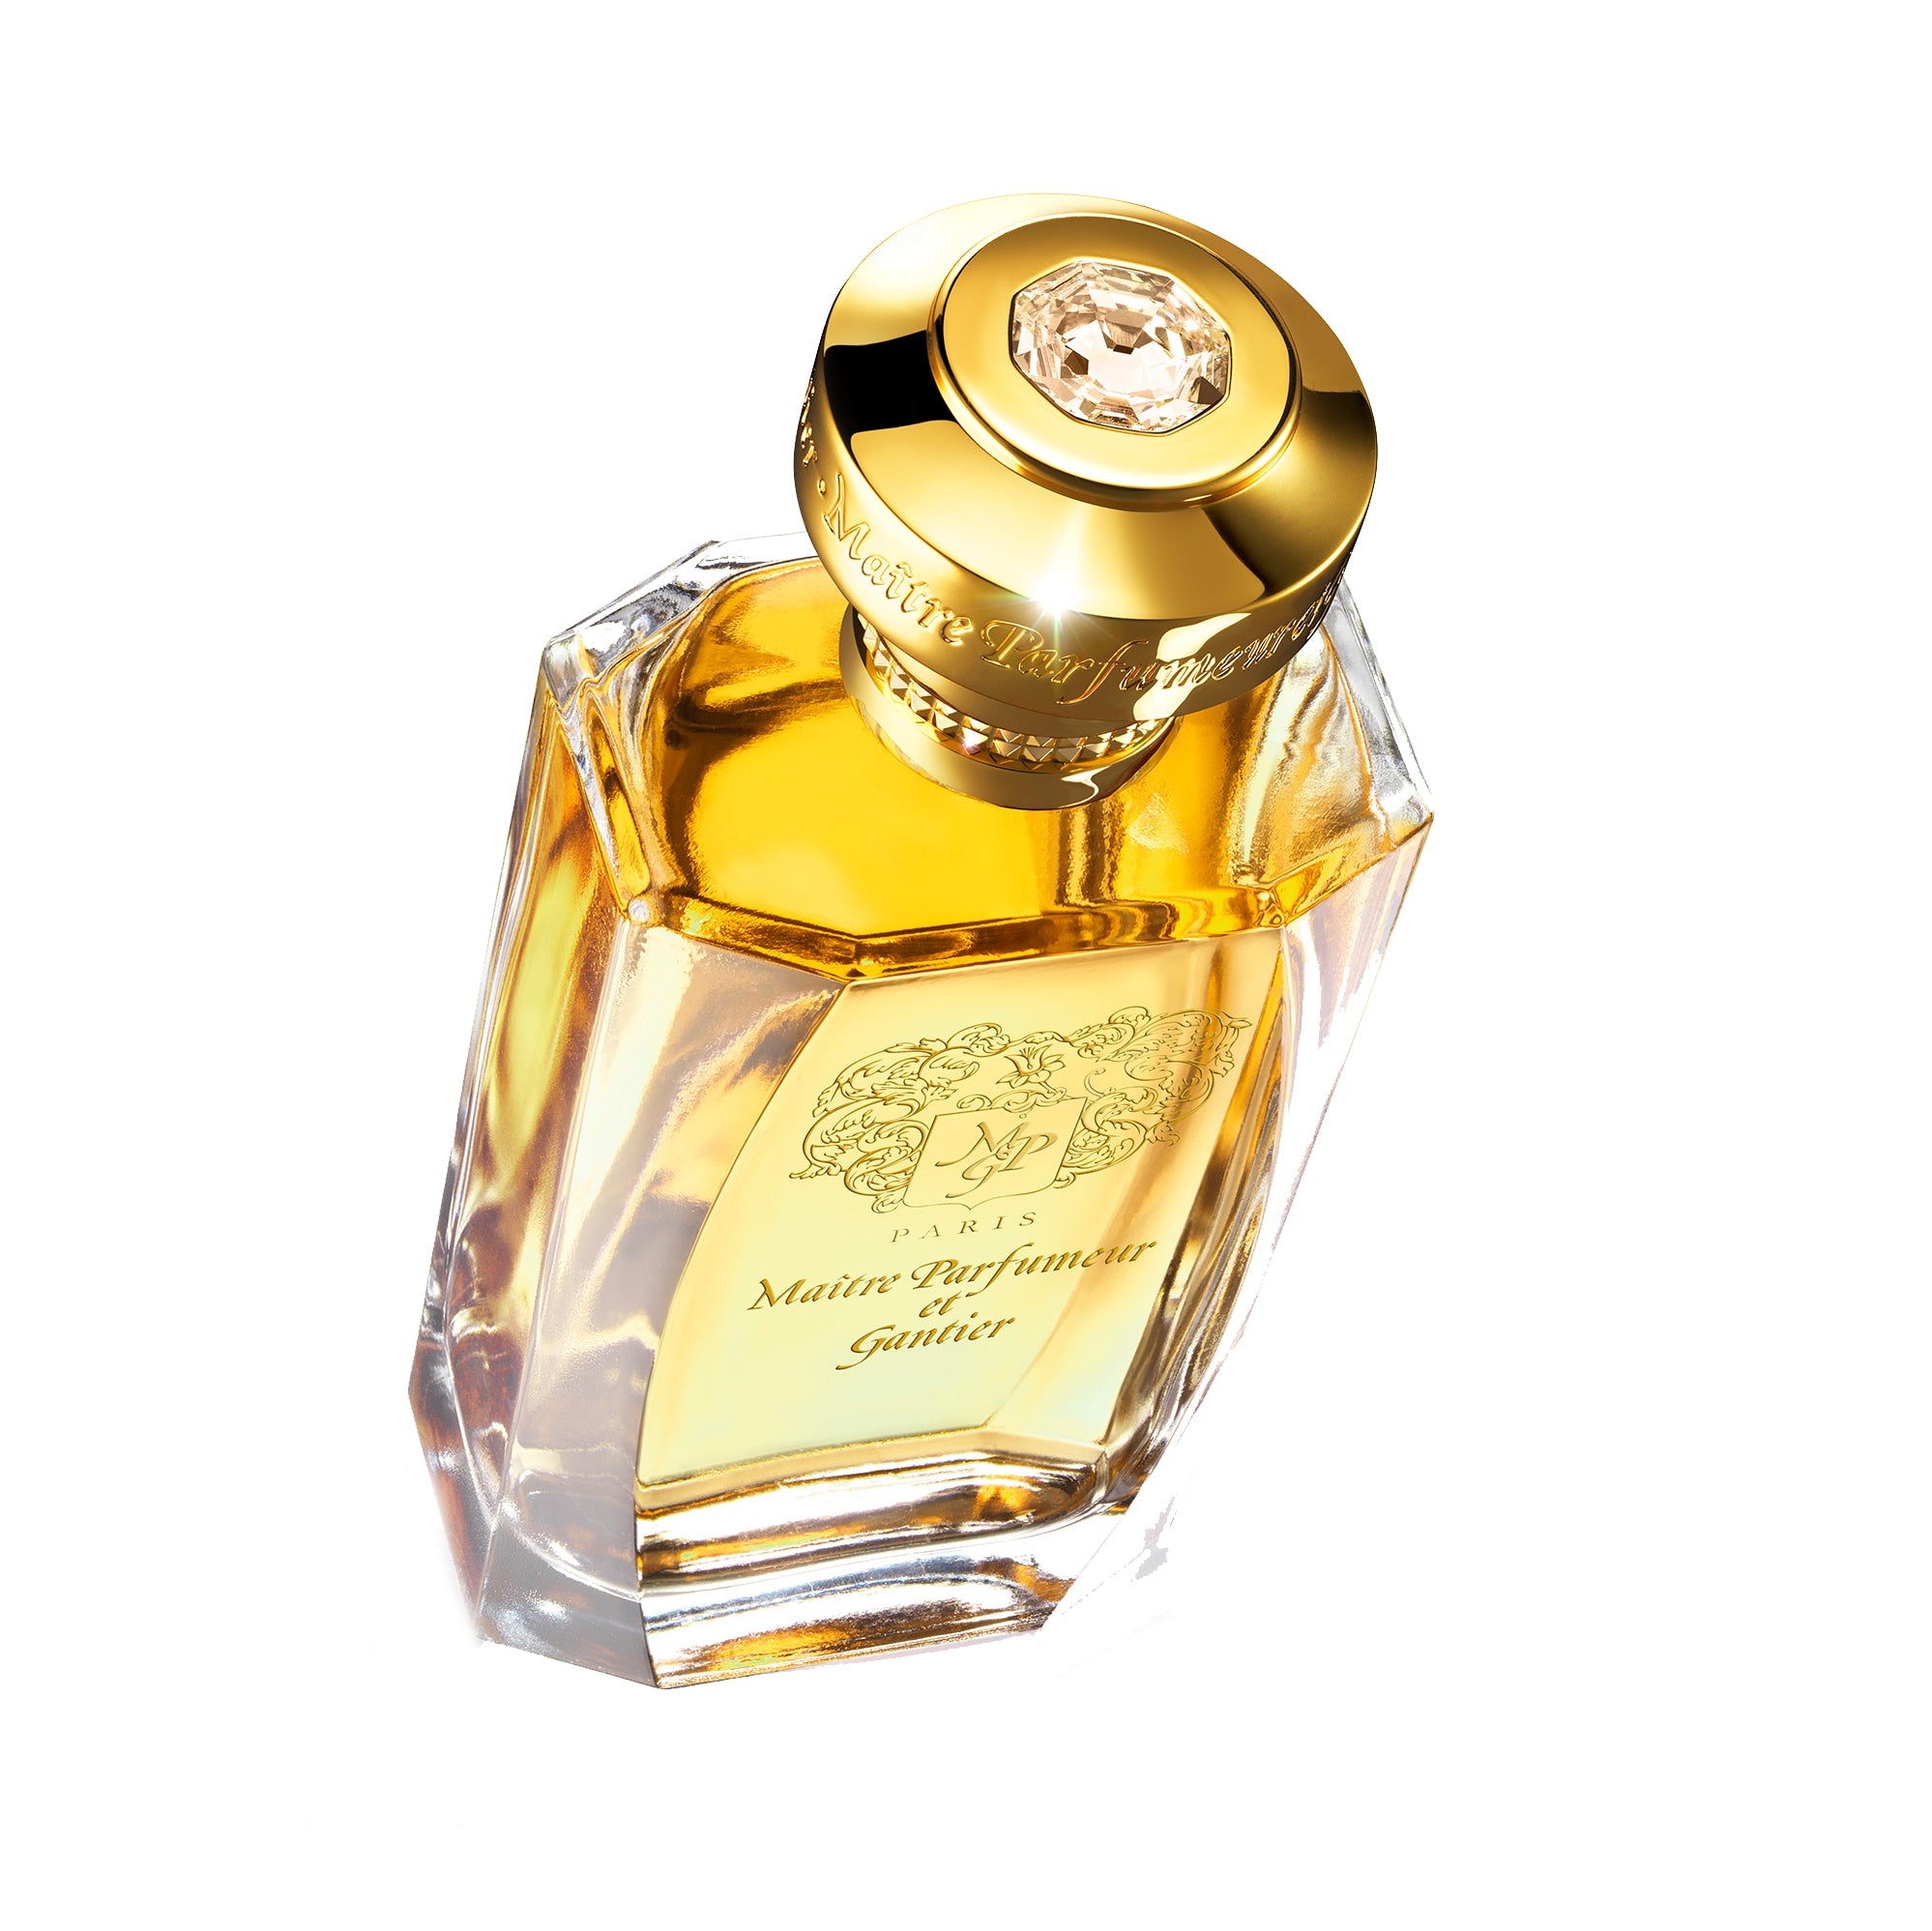 Secrète Datura Eau de Parfum 120ml Bottle by MAÎTRE PARFUMEUR ET GANTIER